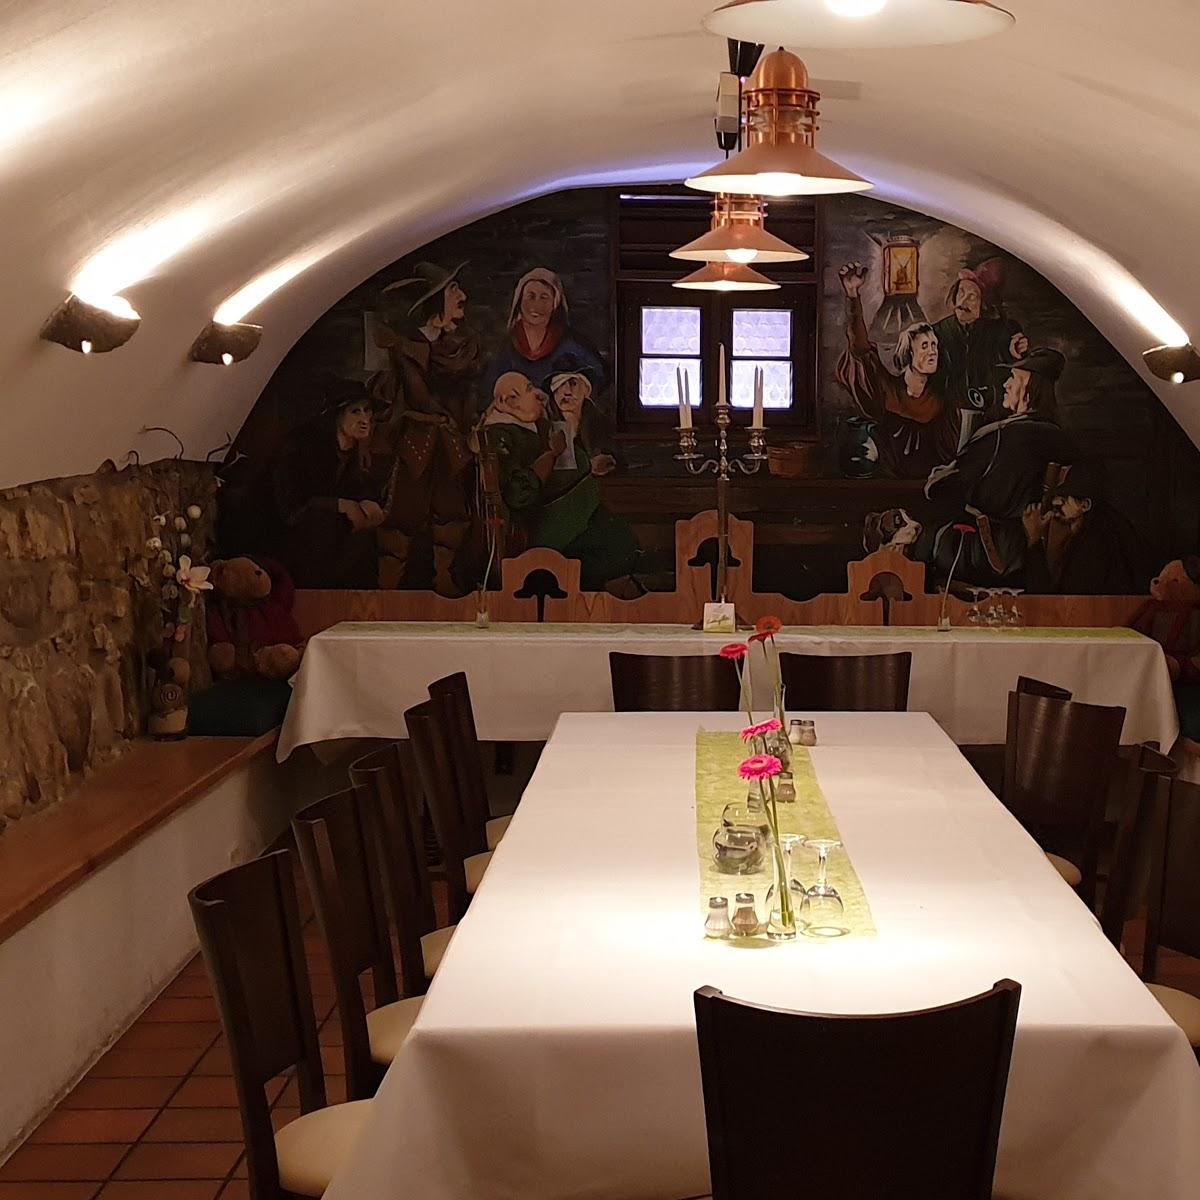 Restaurant "Ratskeller Gaststätte im historischen Gewölbe" in Wunstorf